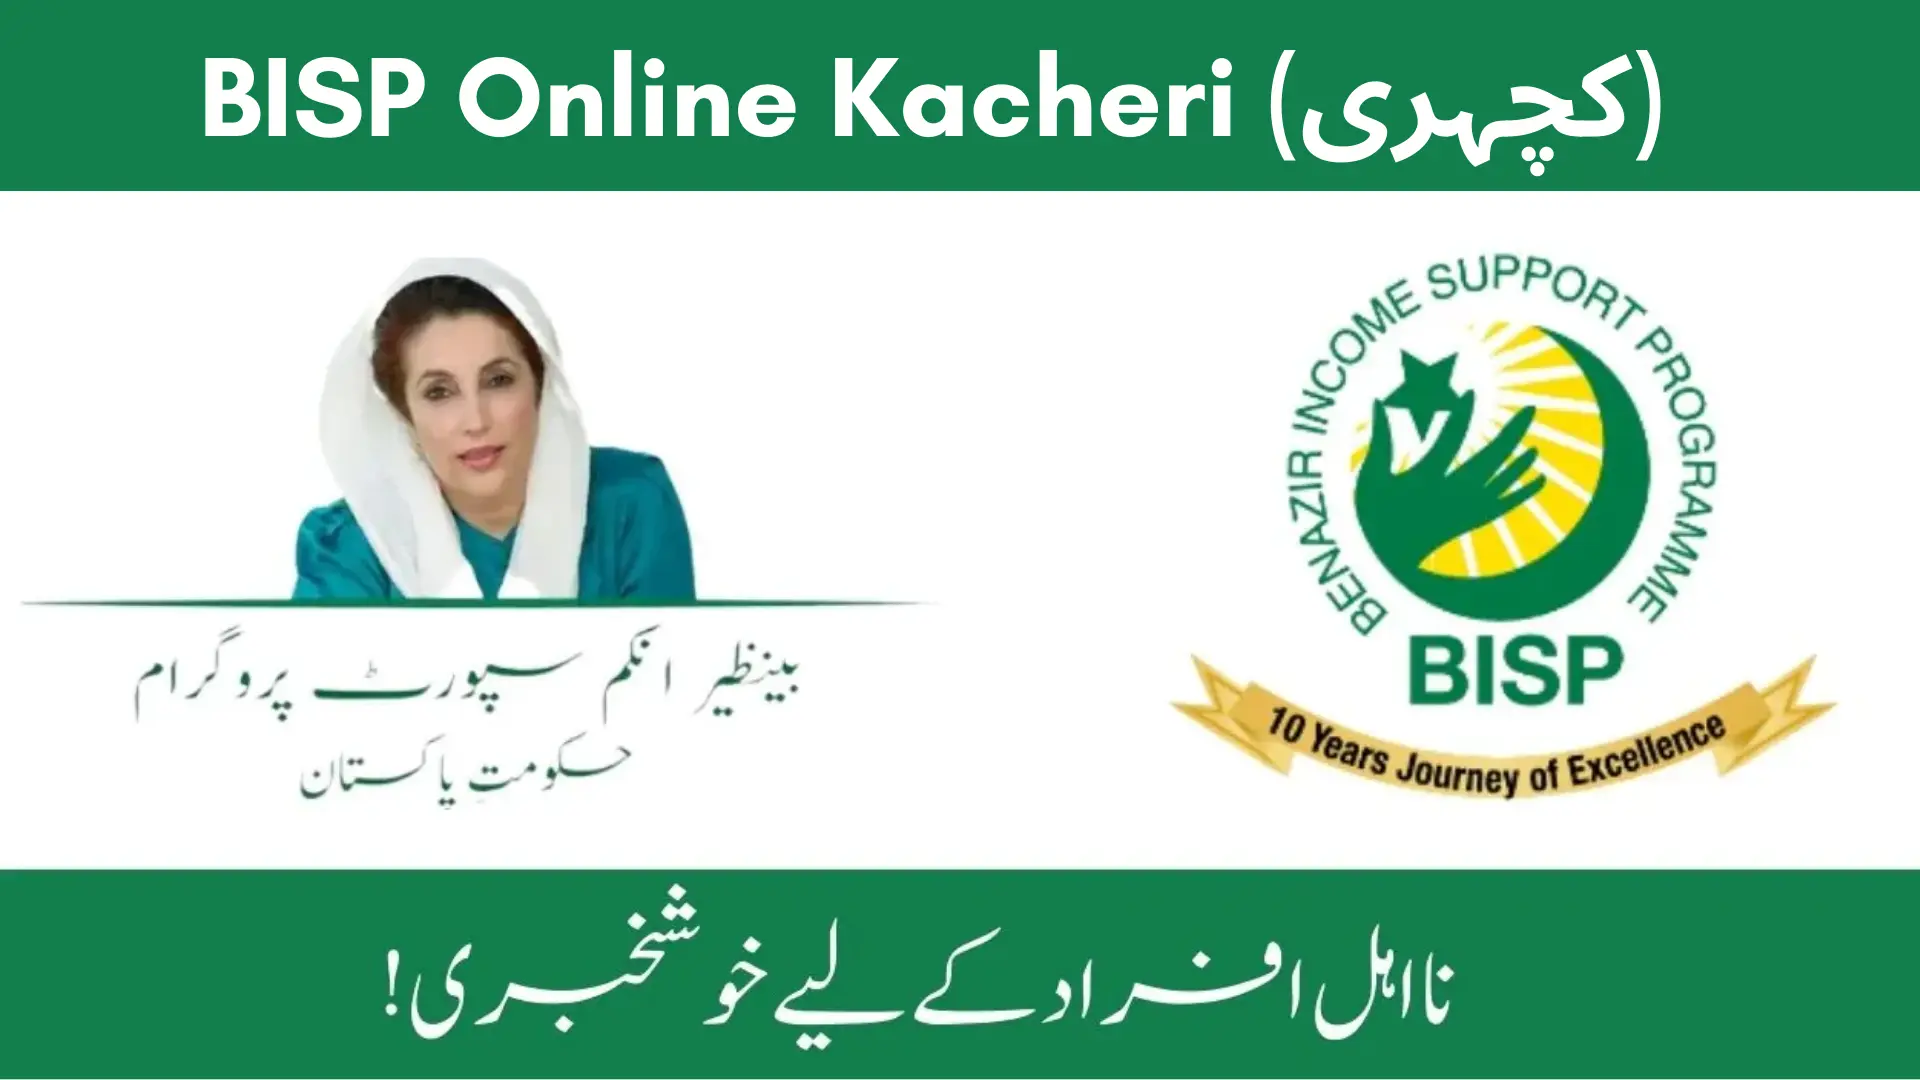 BISP Online Kacheri